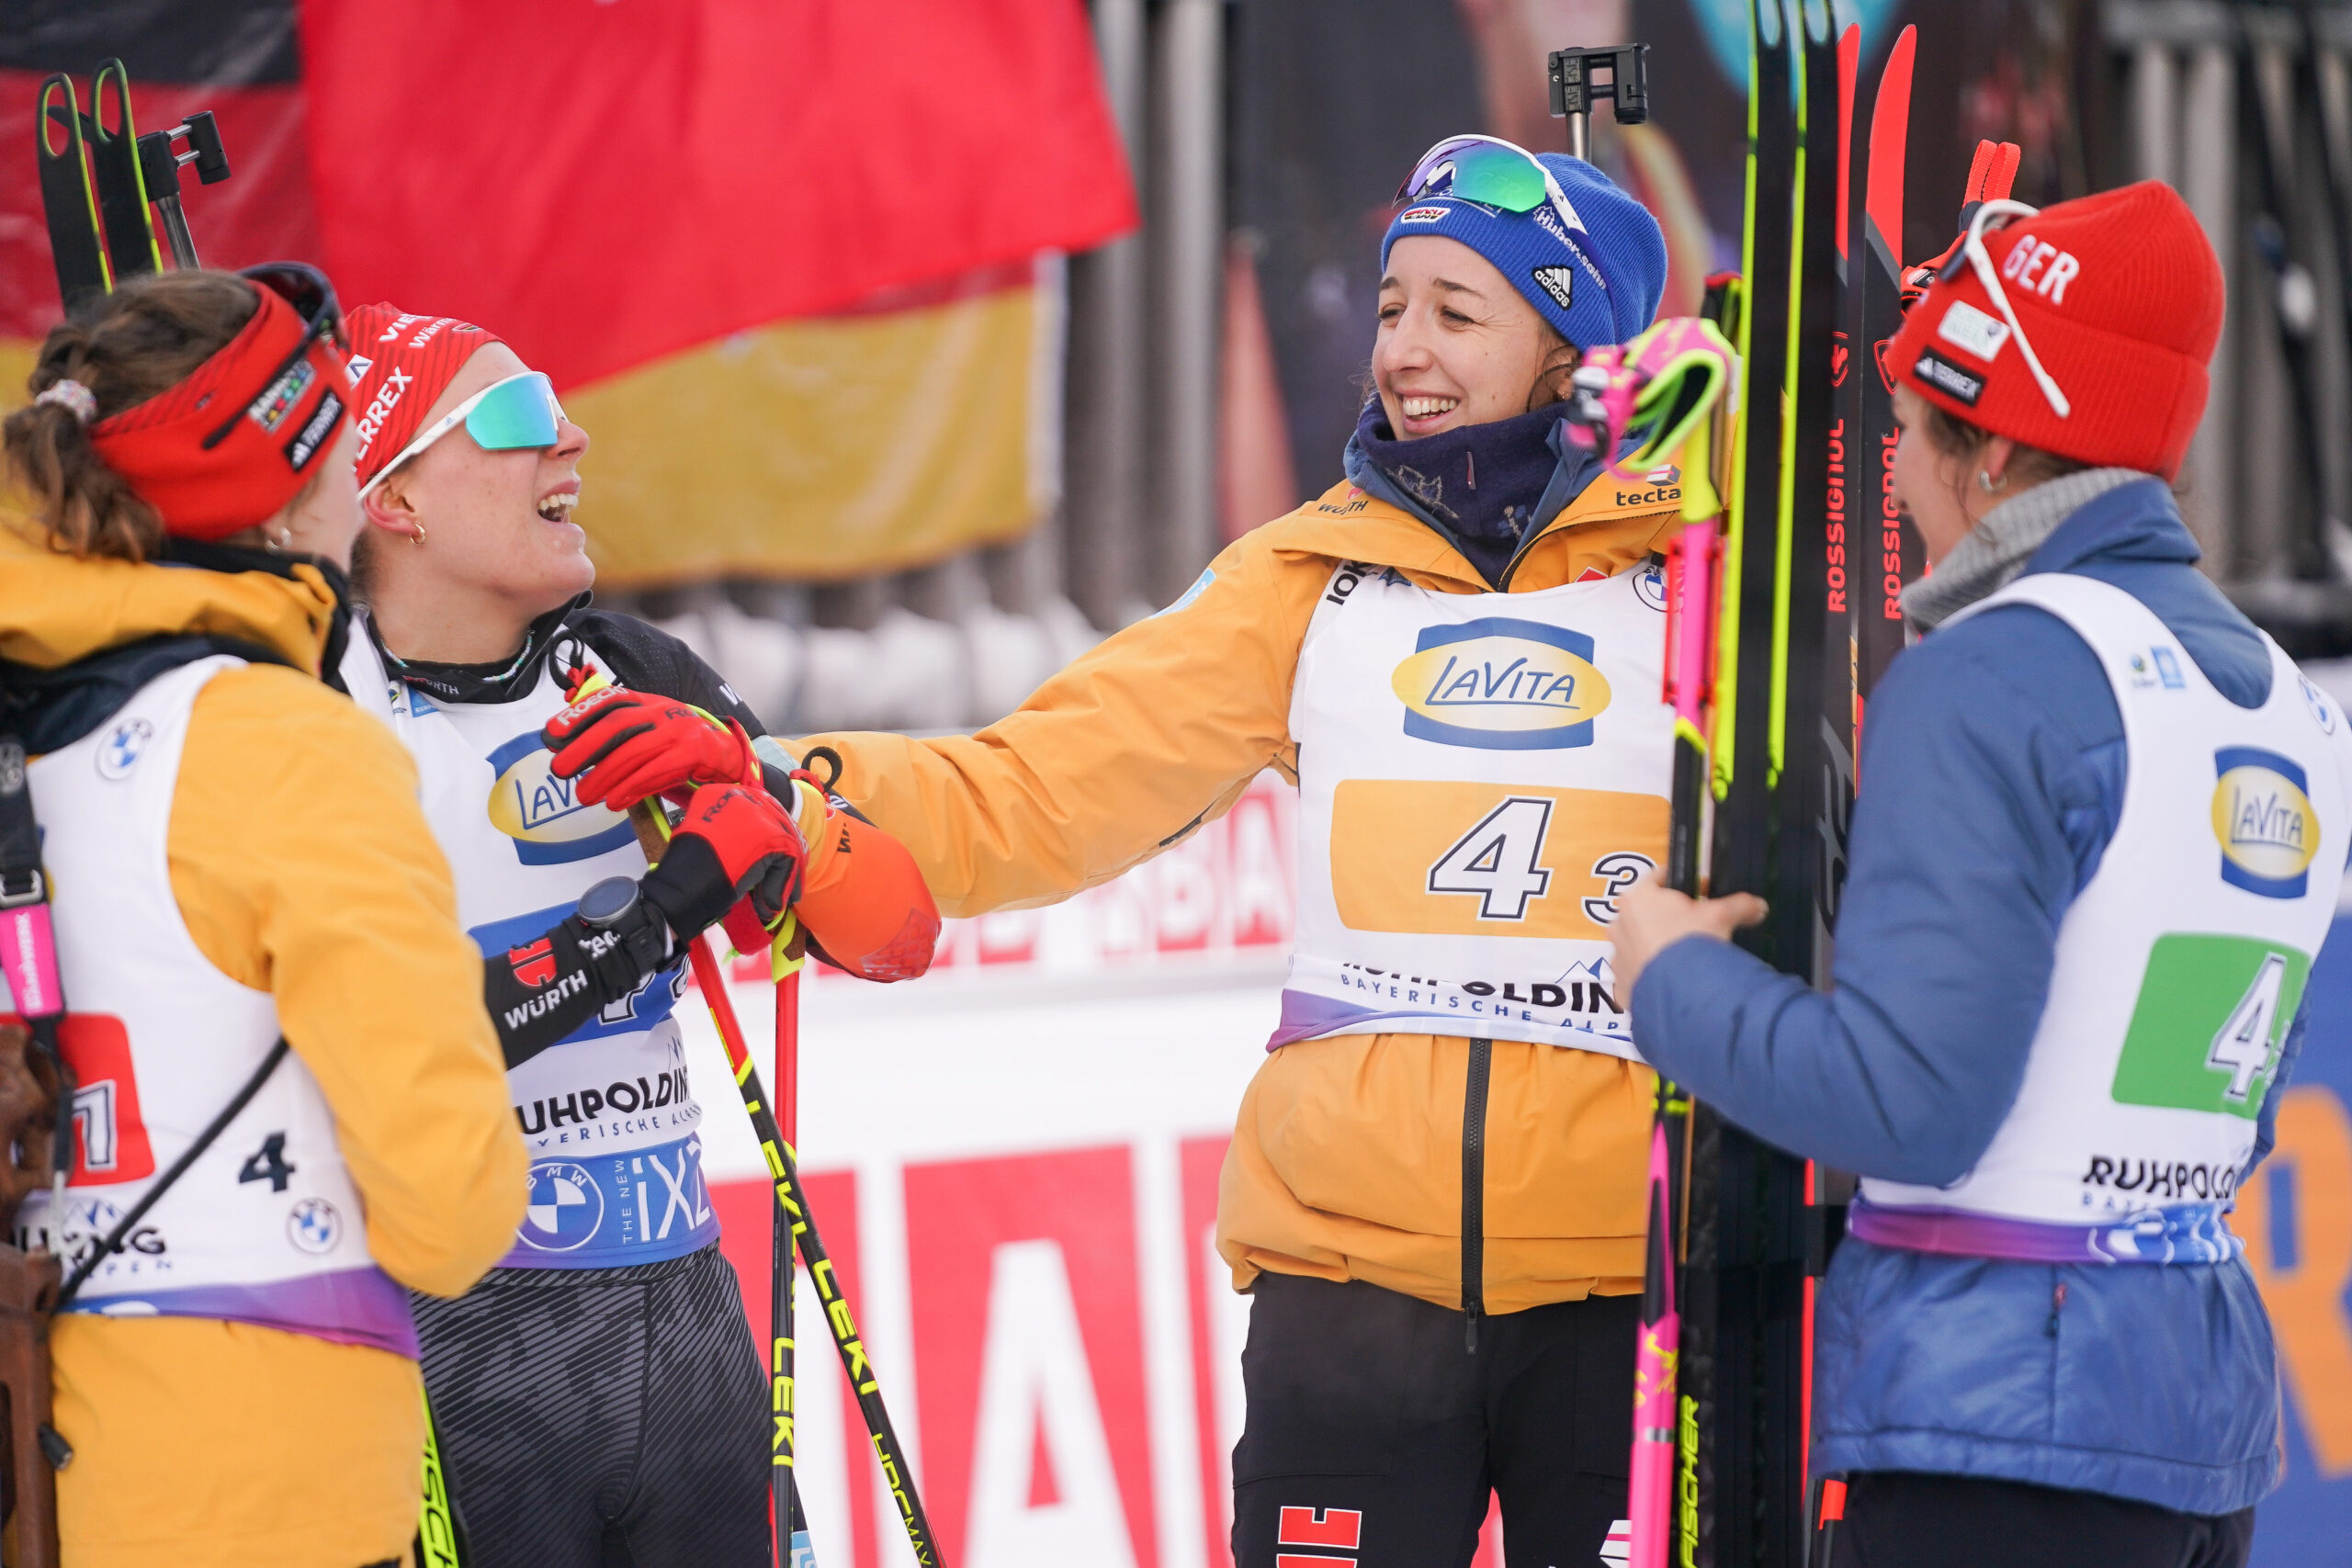 Platz drei in der Staffel: Janina Hettich-Walz, Hanna Kebinger, Franziska Preuß, Sophia Schneider (l.n.r.)freuen sich über den Erfolg beim Heimweltcup in Ruhpolding. So kann es bei der Biathlon-WM gerne weitergehen.